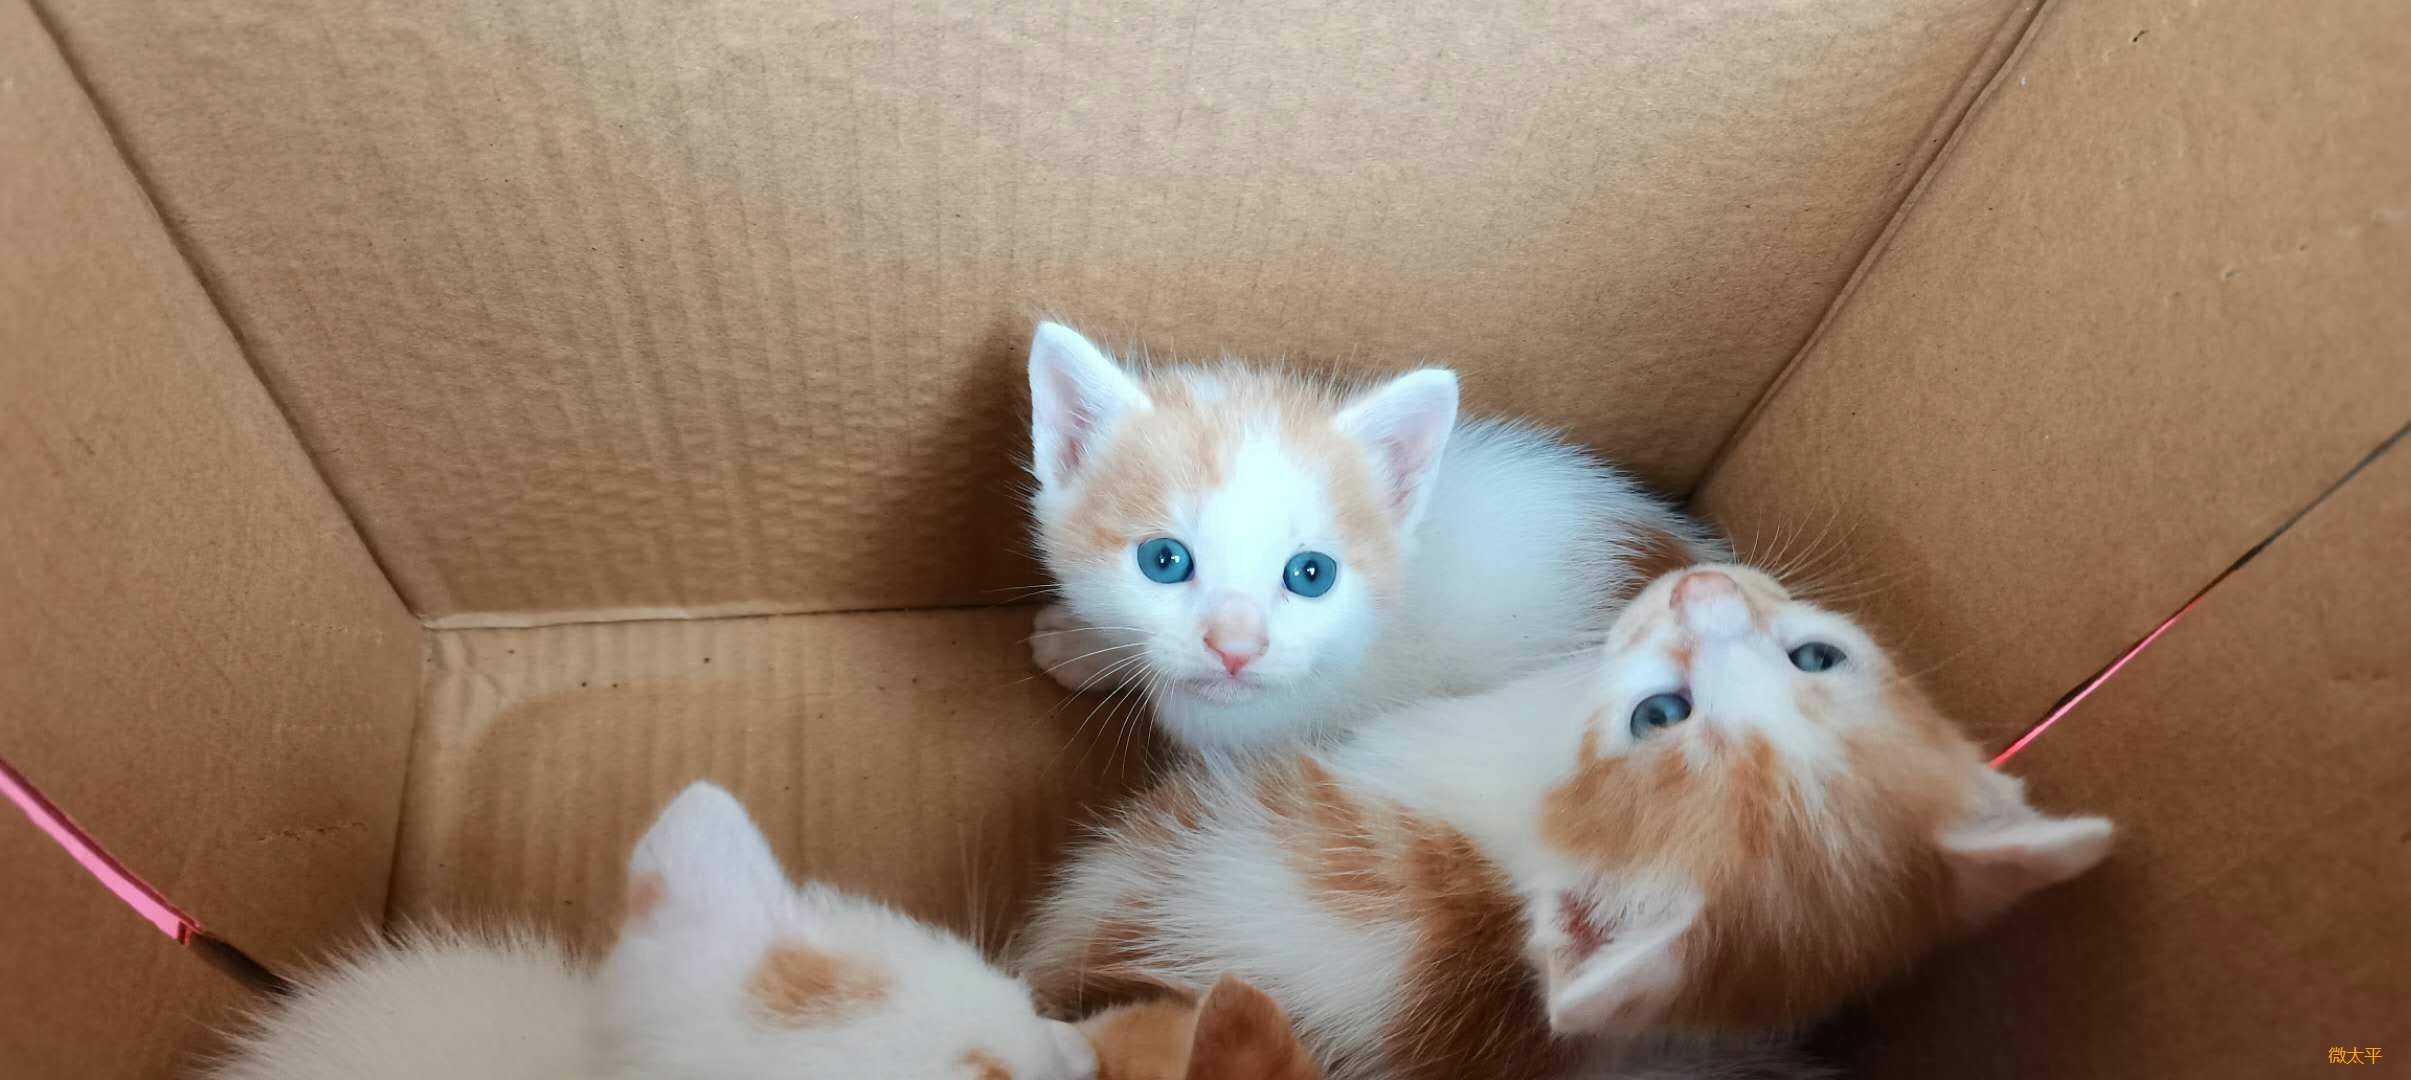 4只蓝眼小橘猫被遗弃,想领养留言,自提